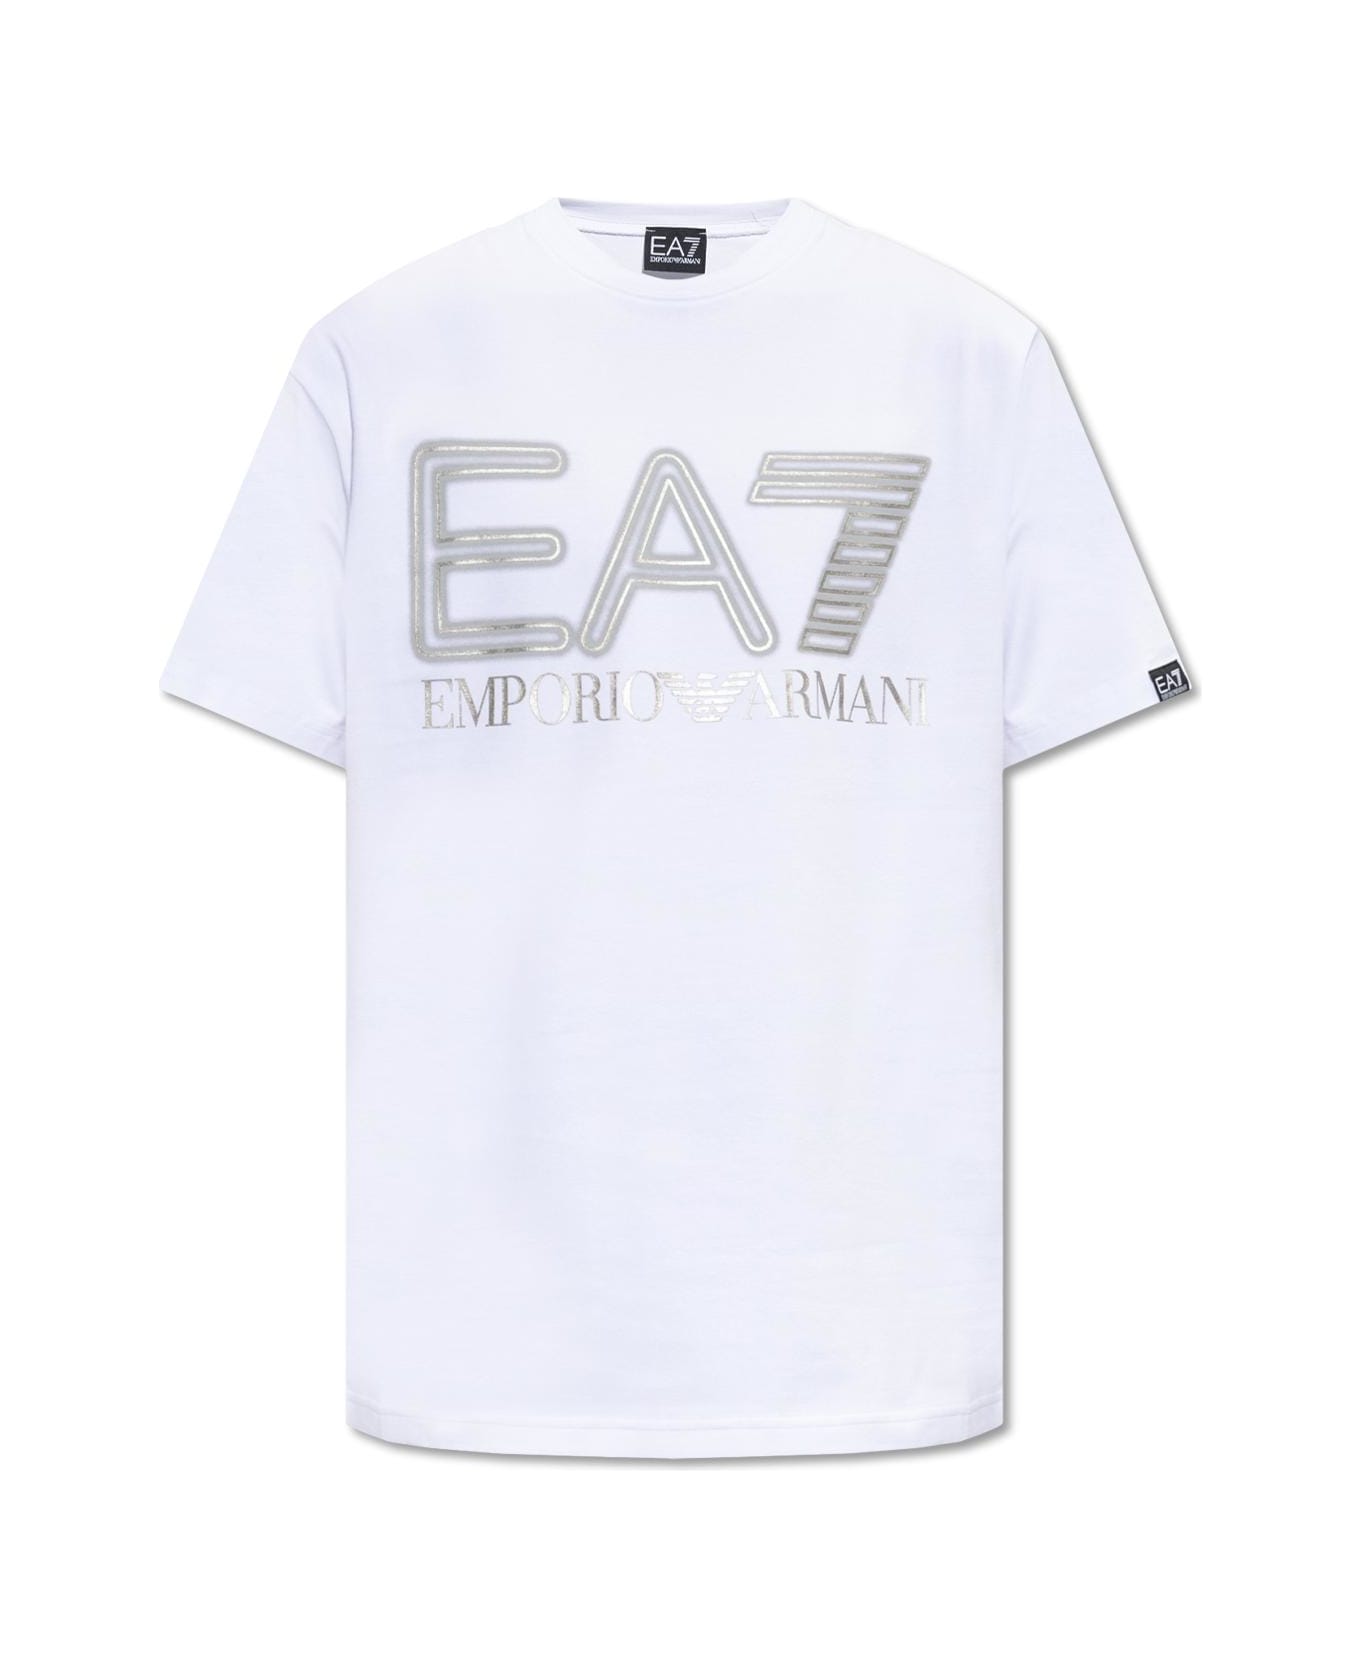 EA7 Emporio Armani T-shirt With Logo - White シャツ